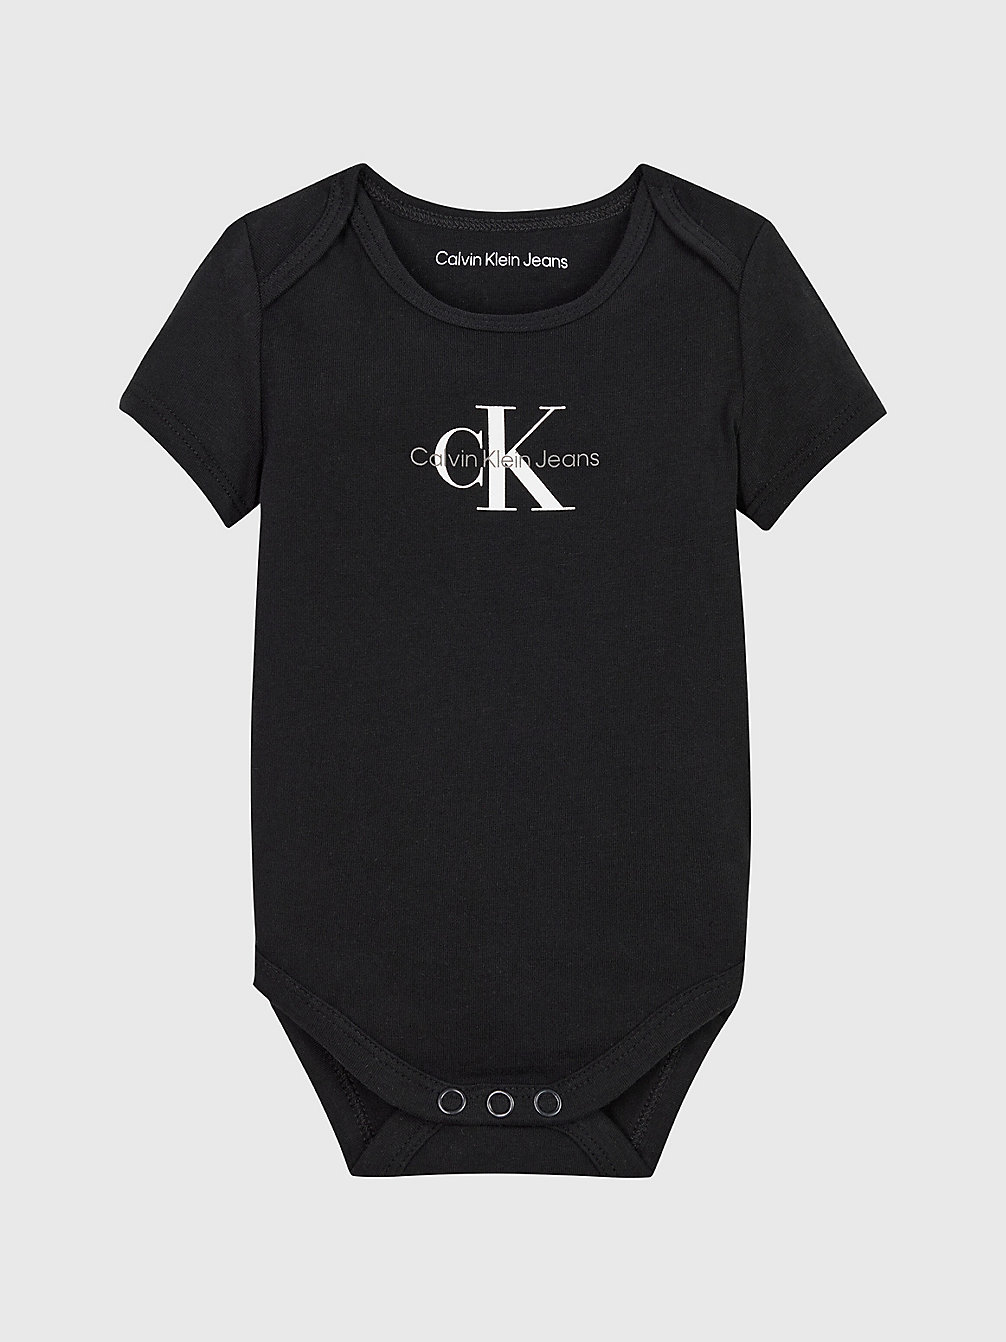 CK BLACK Newborn-Bodysuit Met Logo undefined newborn Calvin Klein